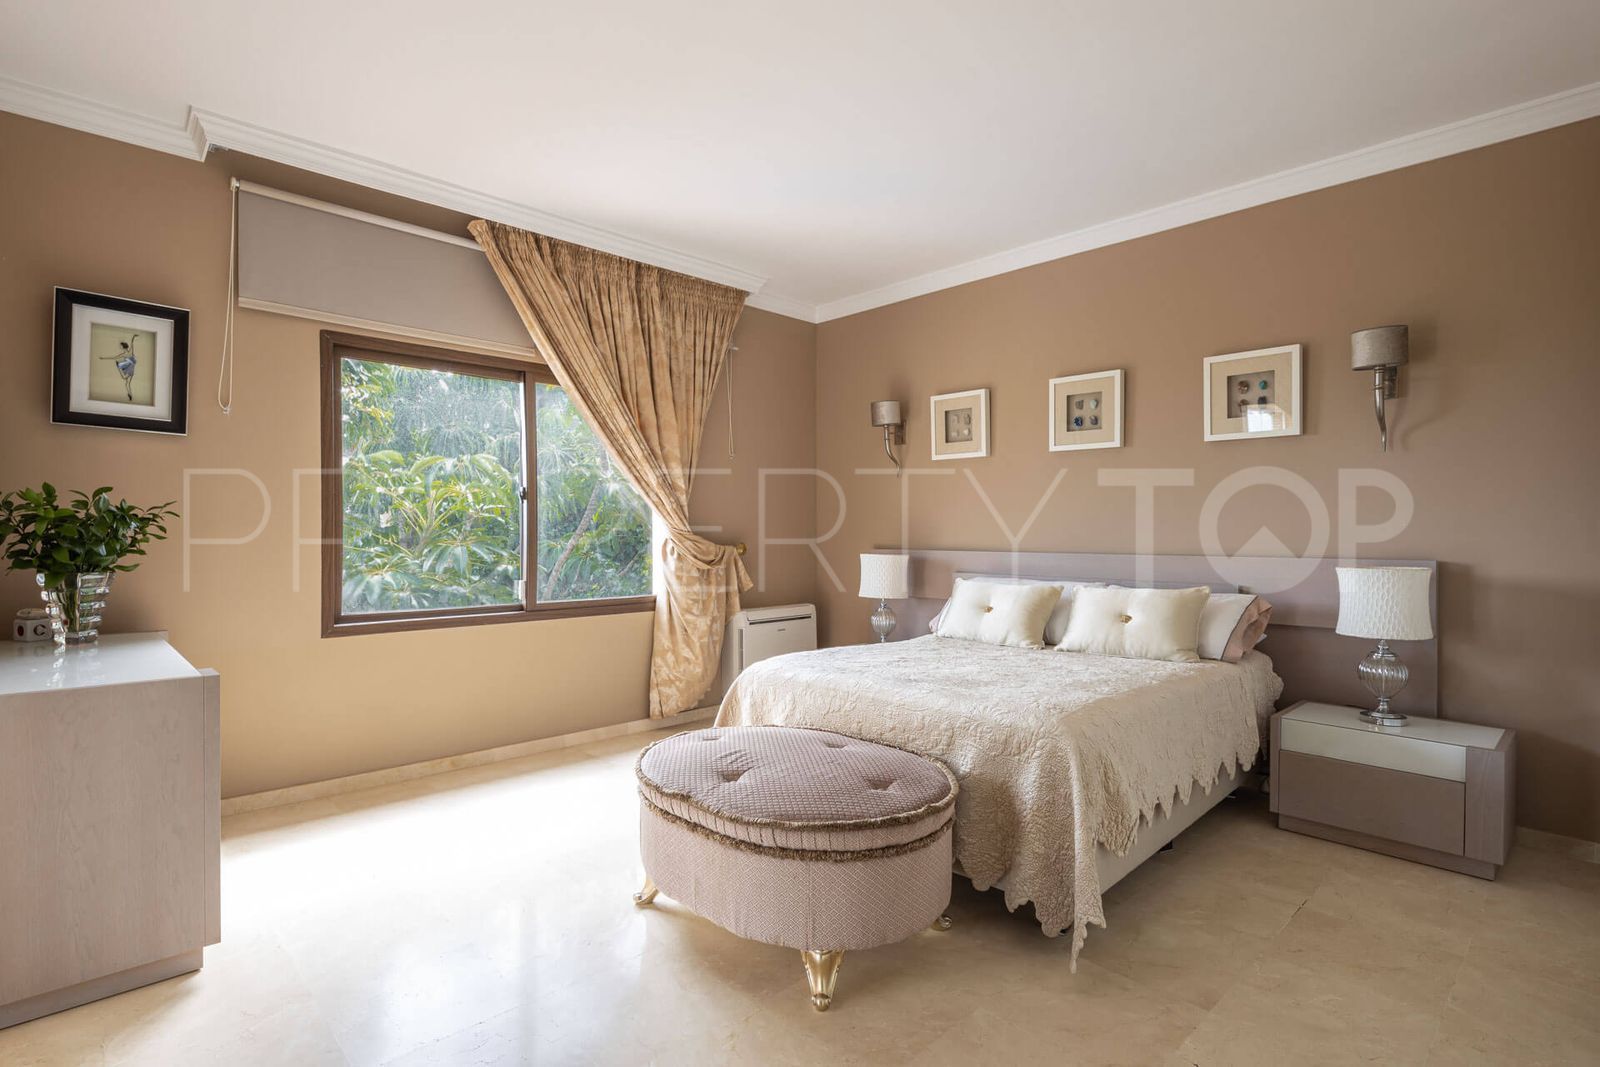 6 bedrooms El Paraiso villa for sale